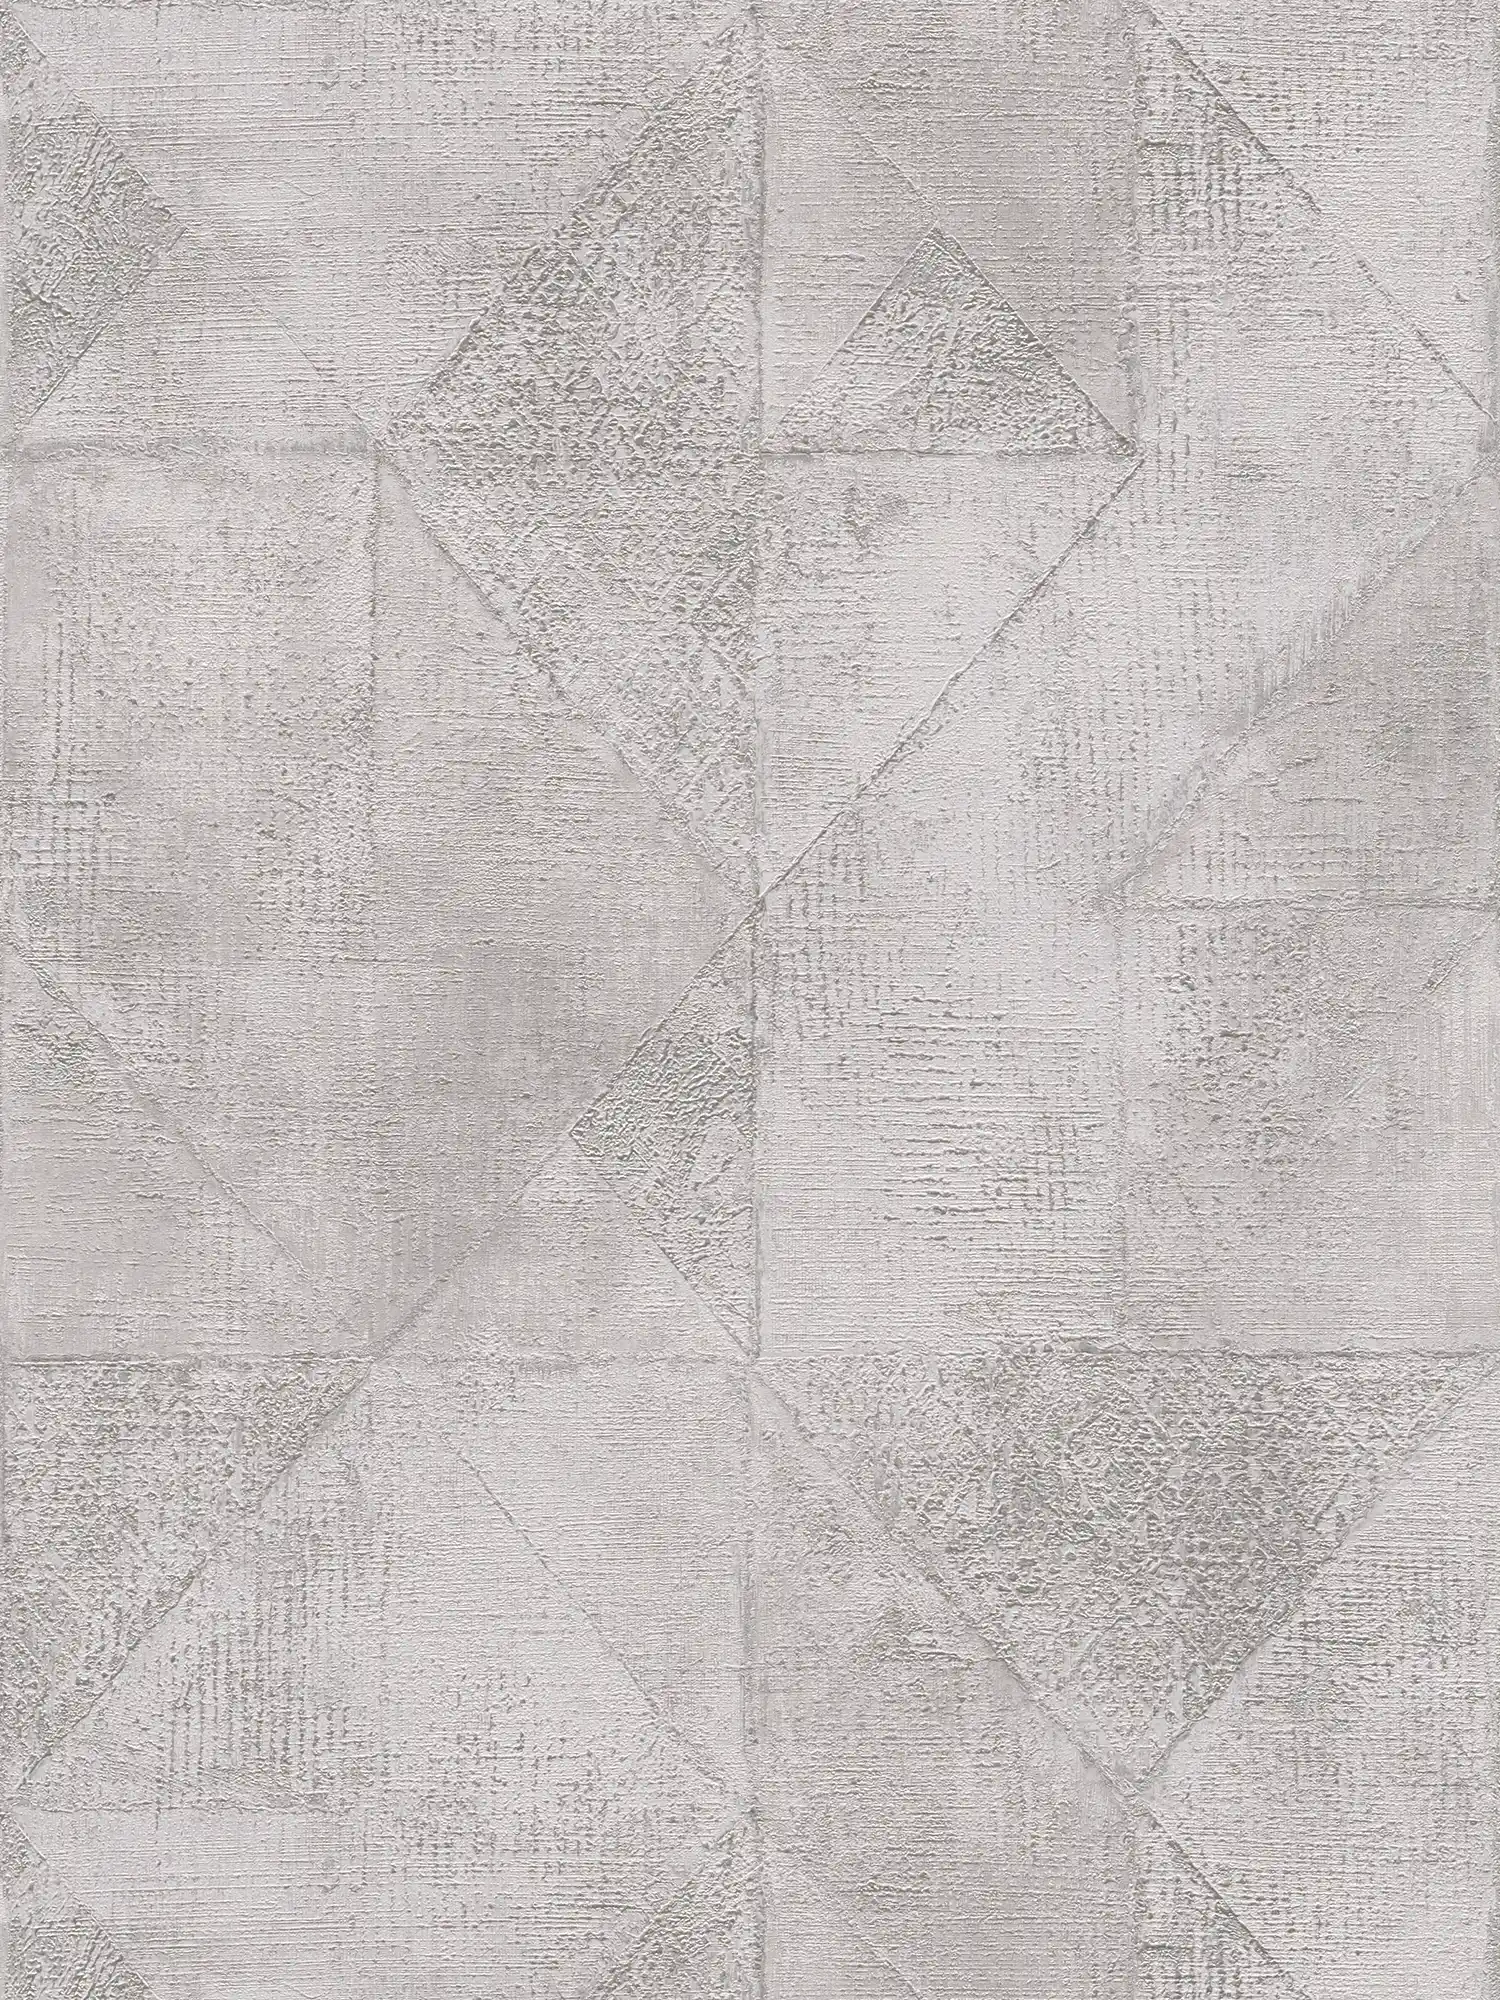 Tapete mit Grafik Dreieck-Muster metallic glänzend strukturiert – Grau, Silber
